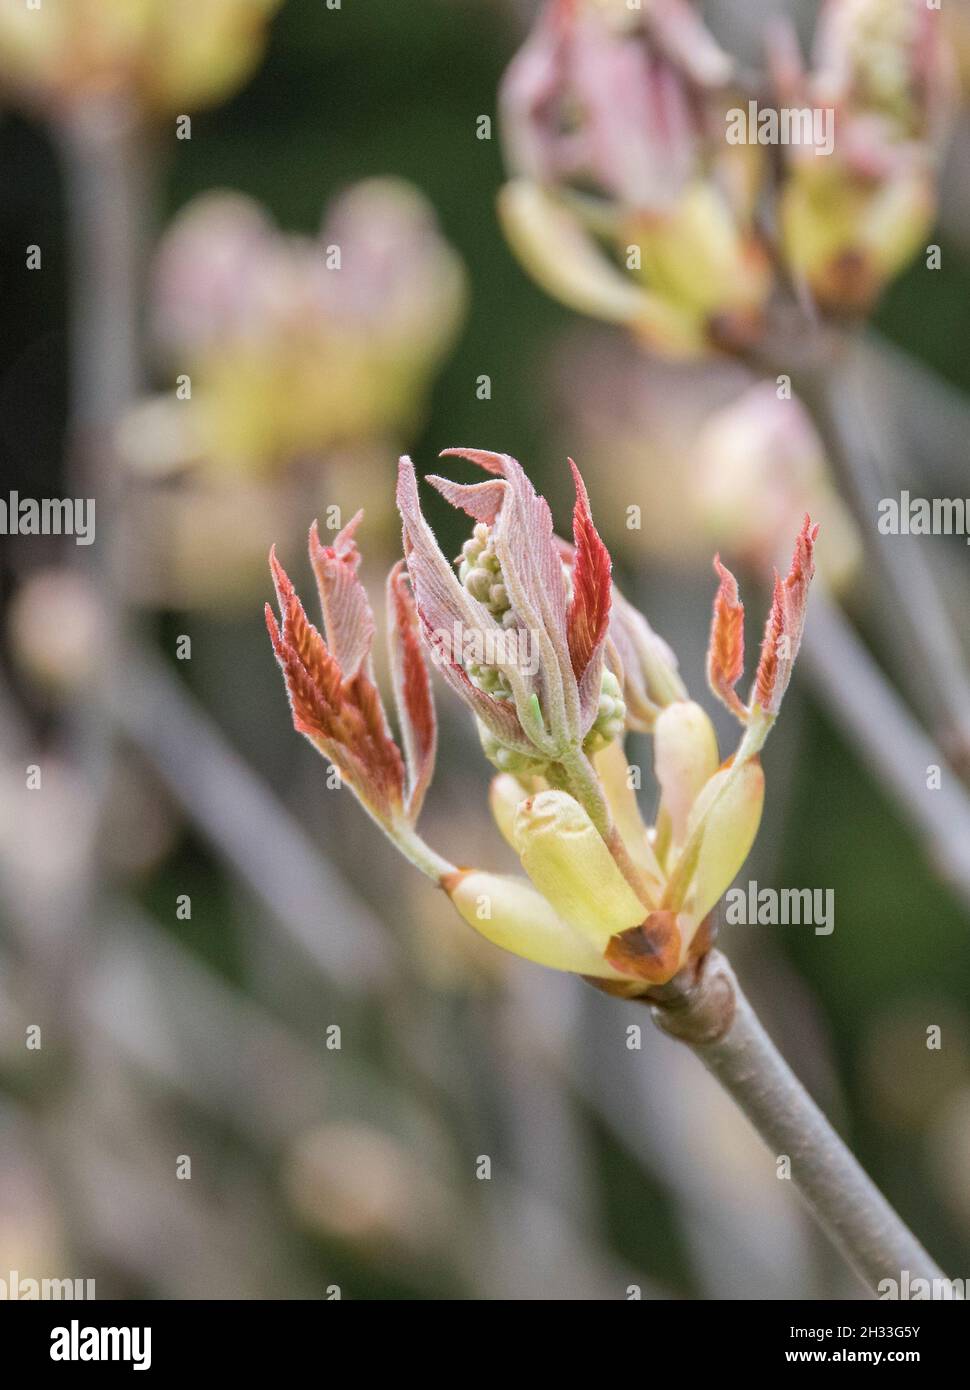 Rosskastanie (Aesculus × mutabilis 'Induta') Stock Photo